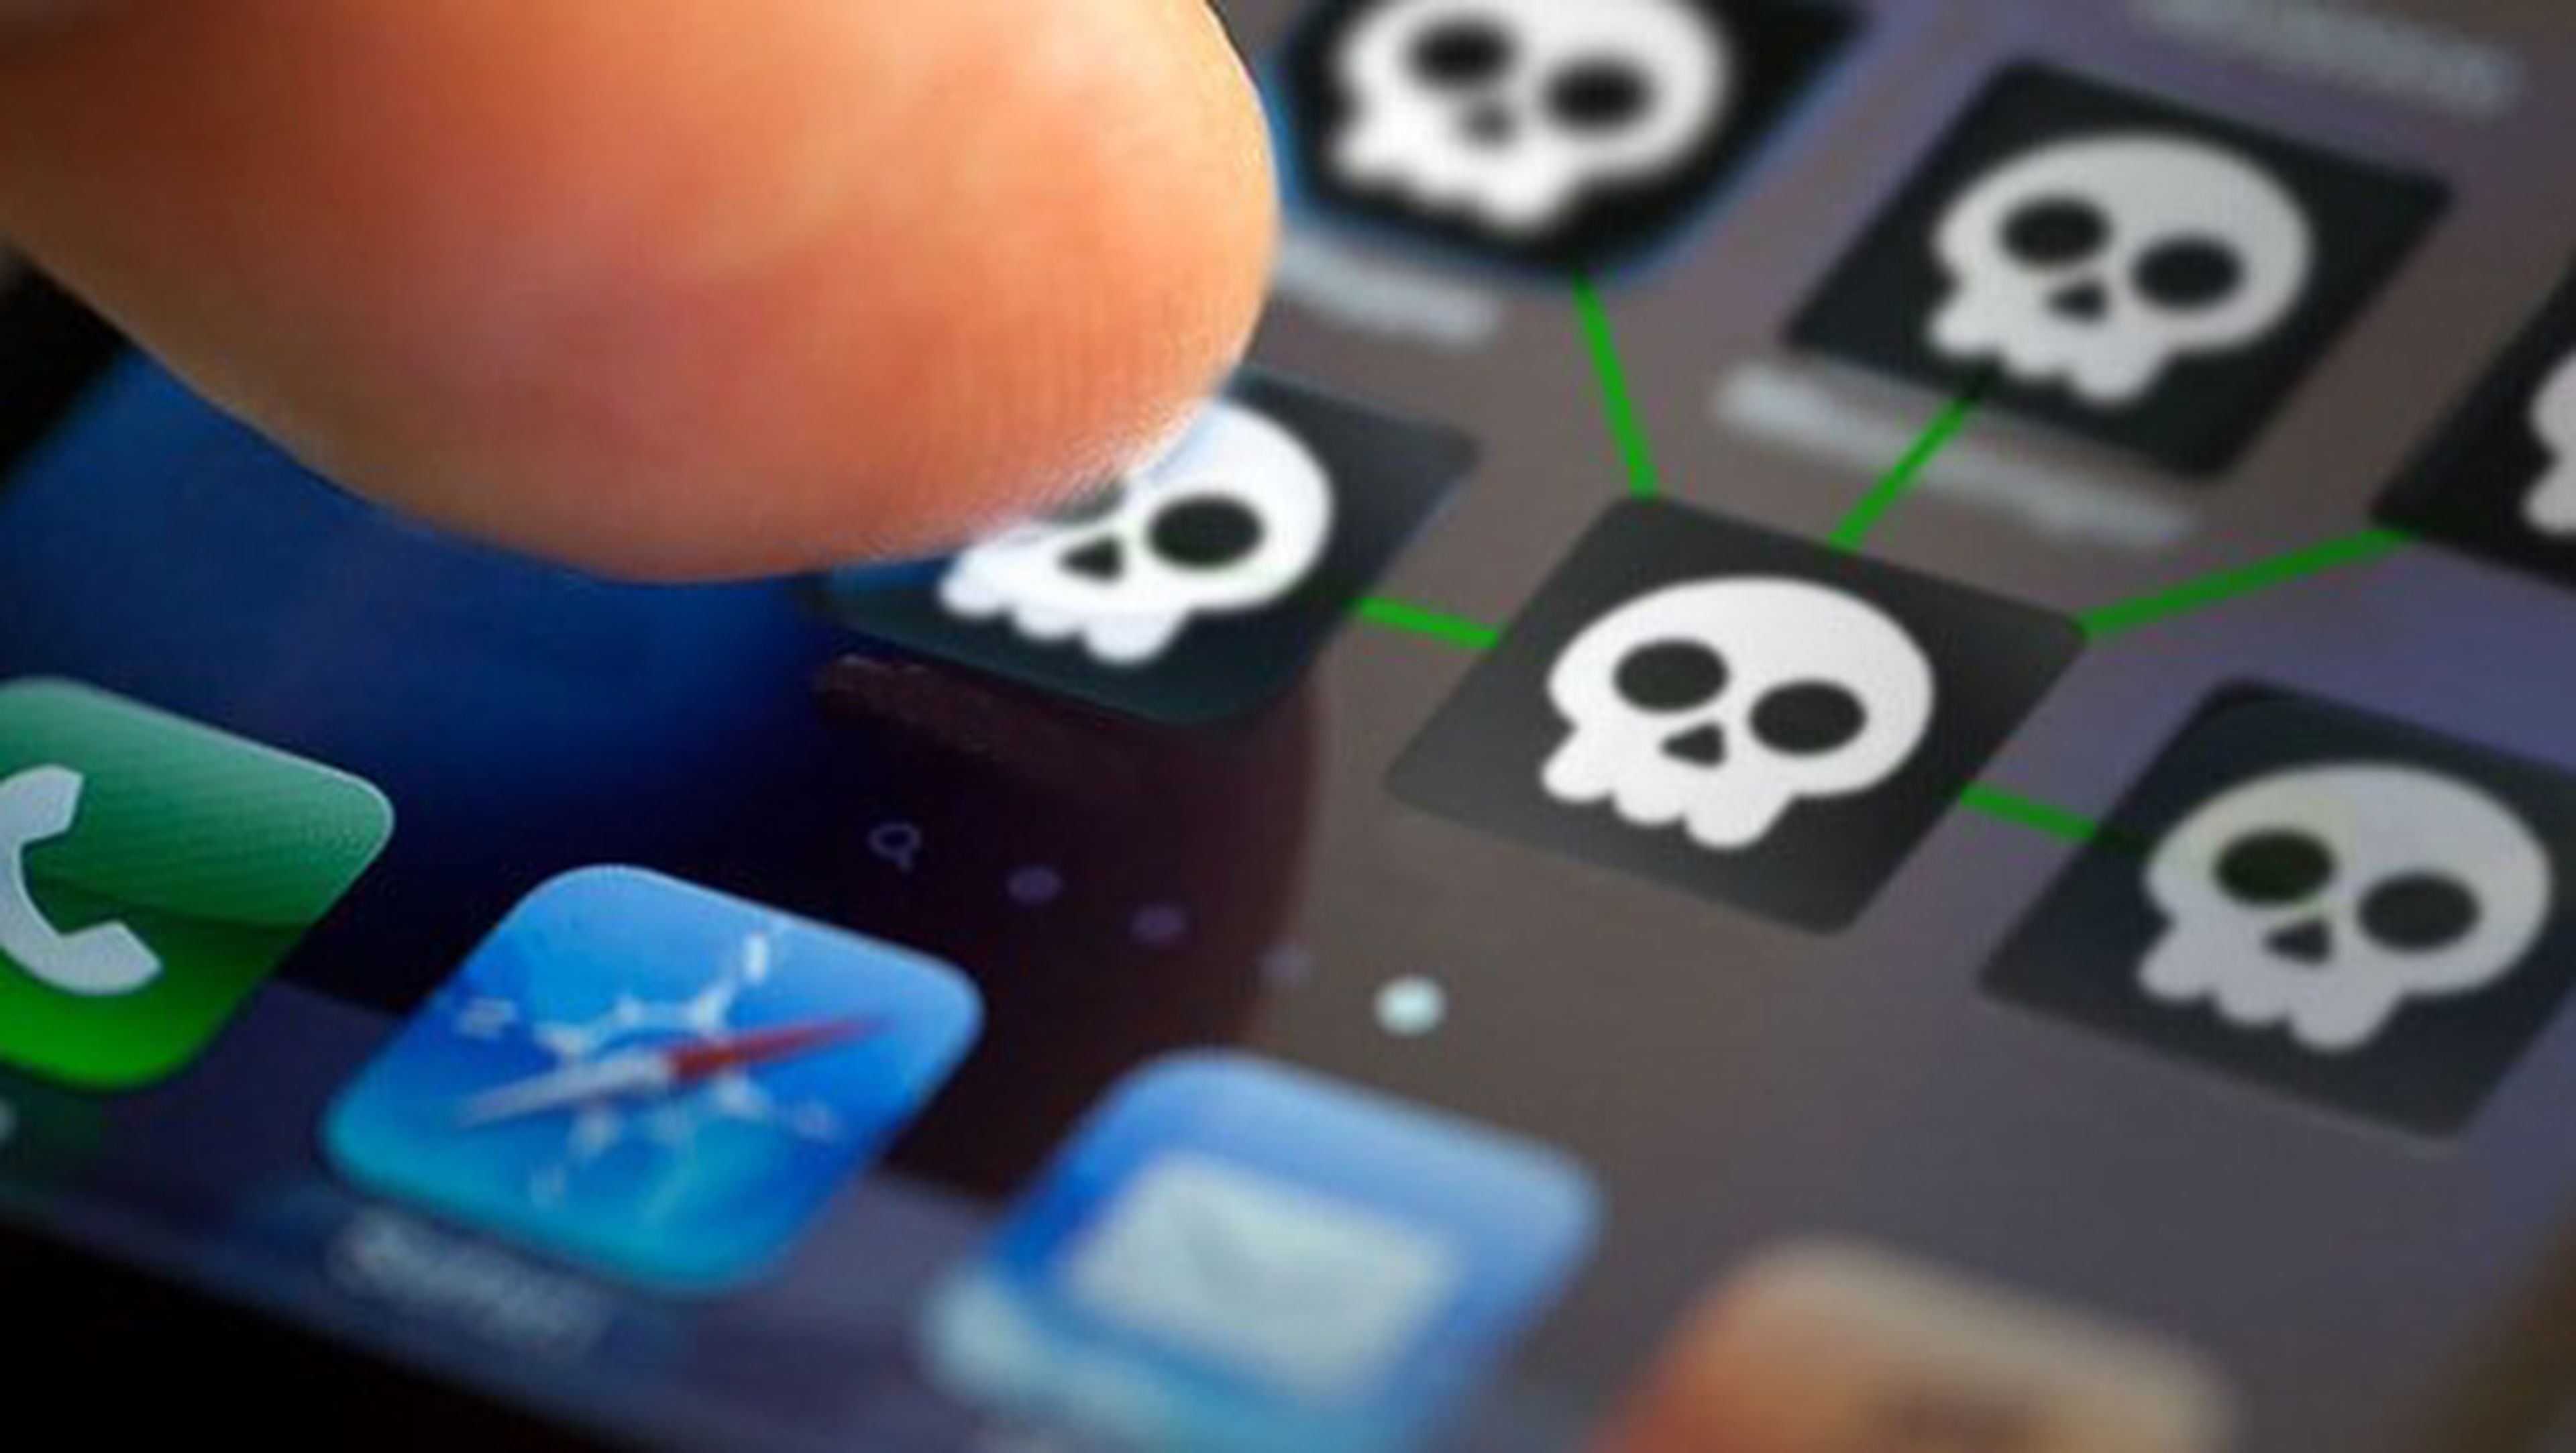 76 aplicaciones para el iPhone y iPad son peligrosas